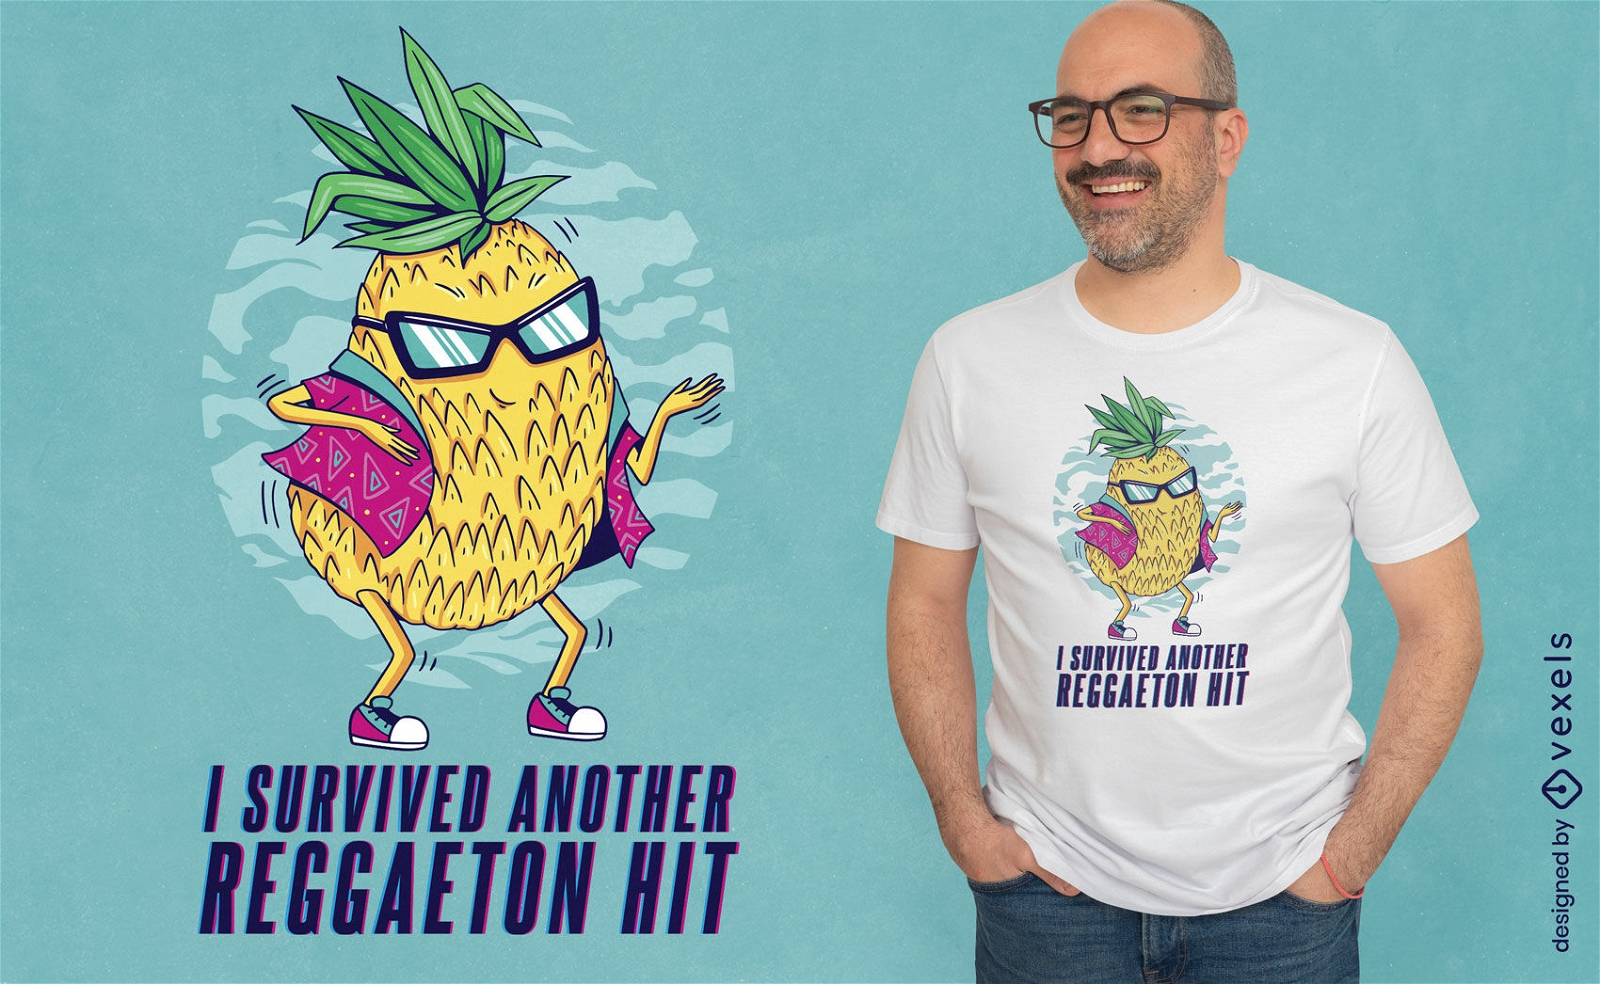 Pineapple reggaeton quote t-shirt design